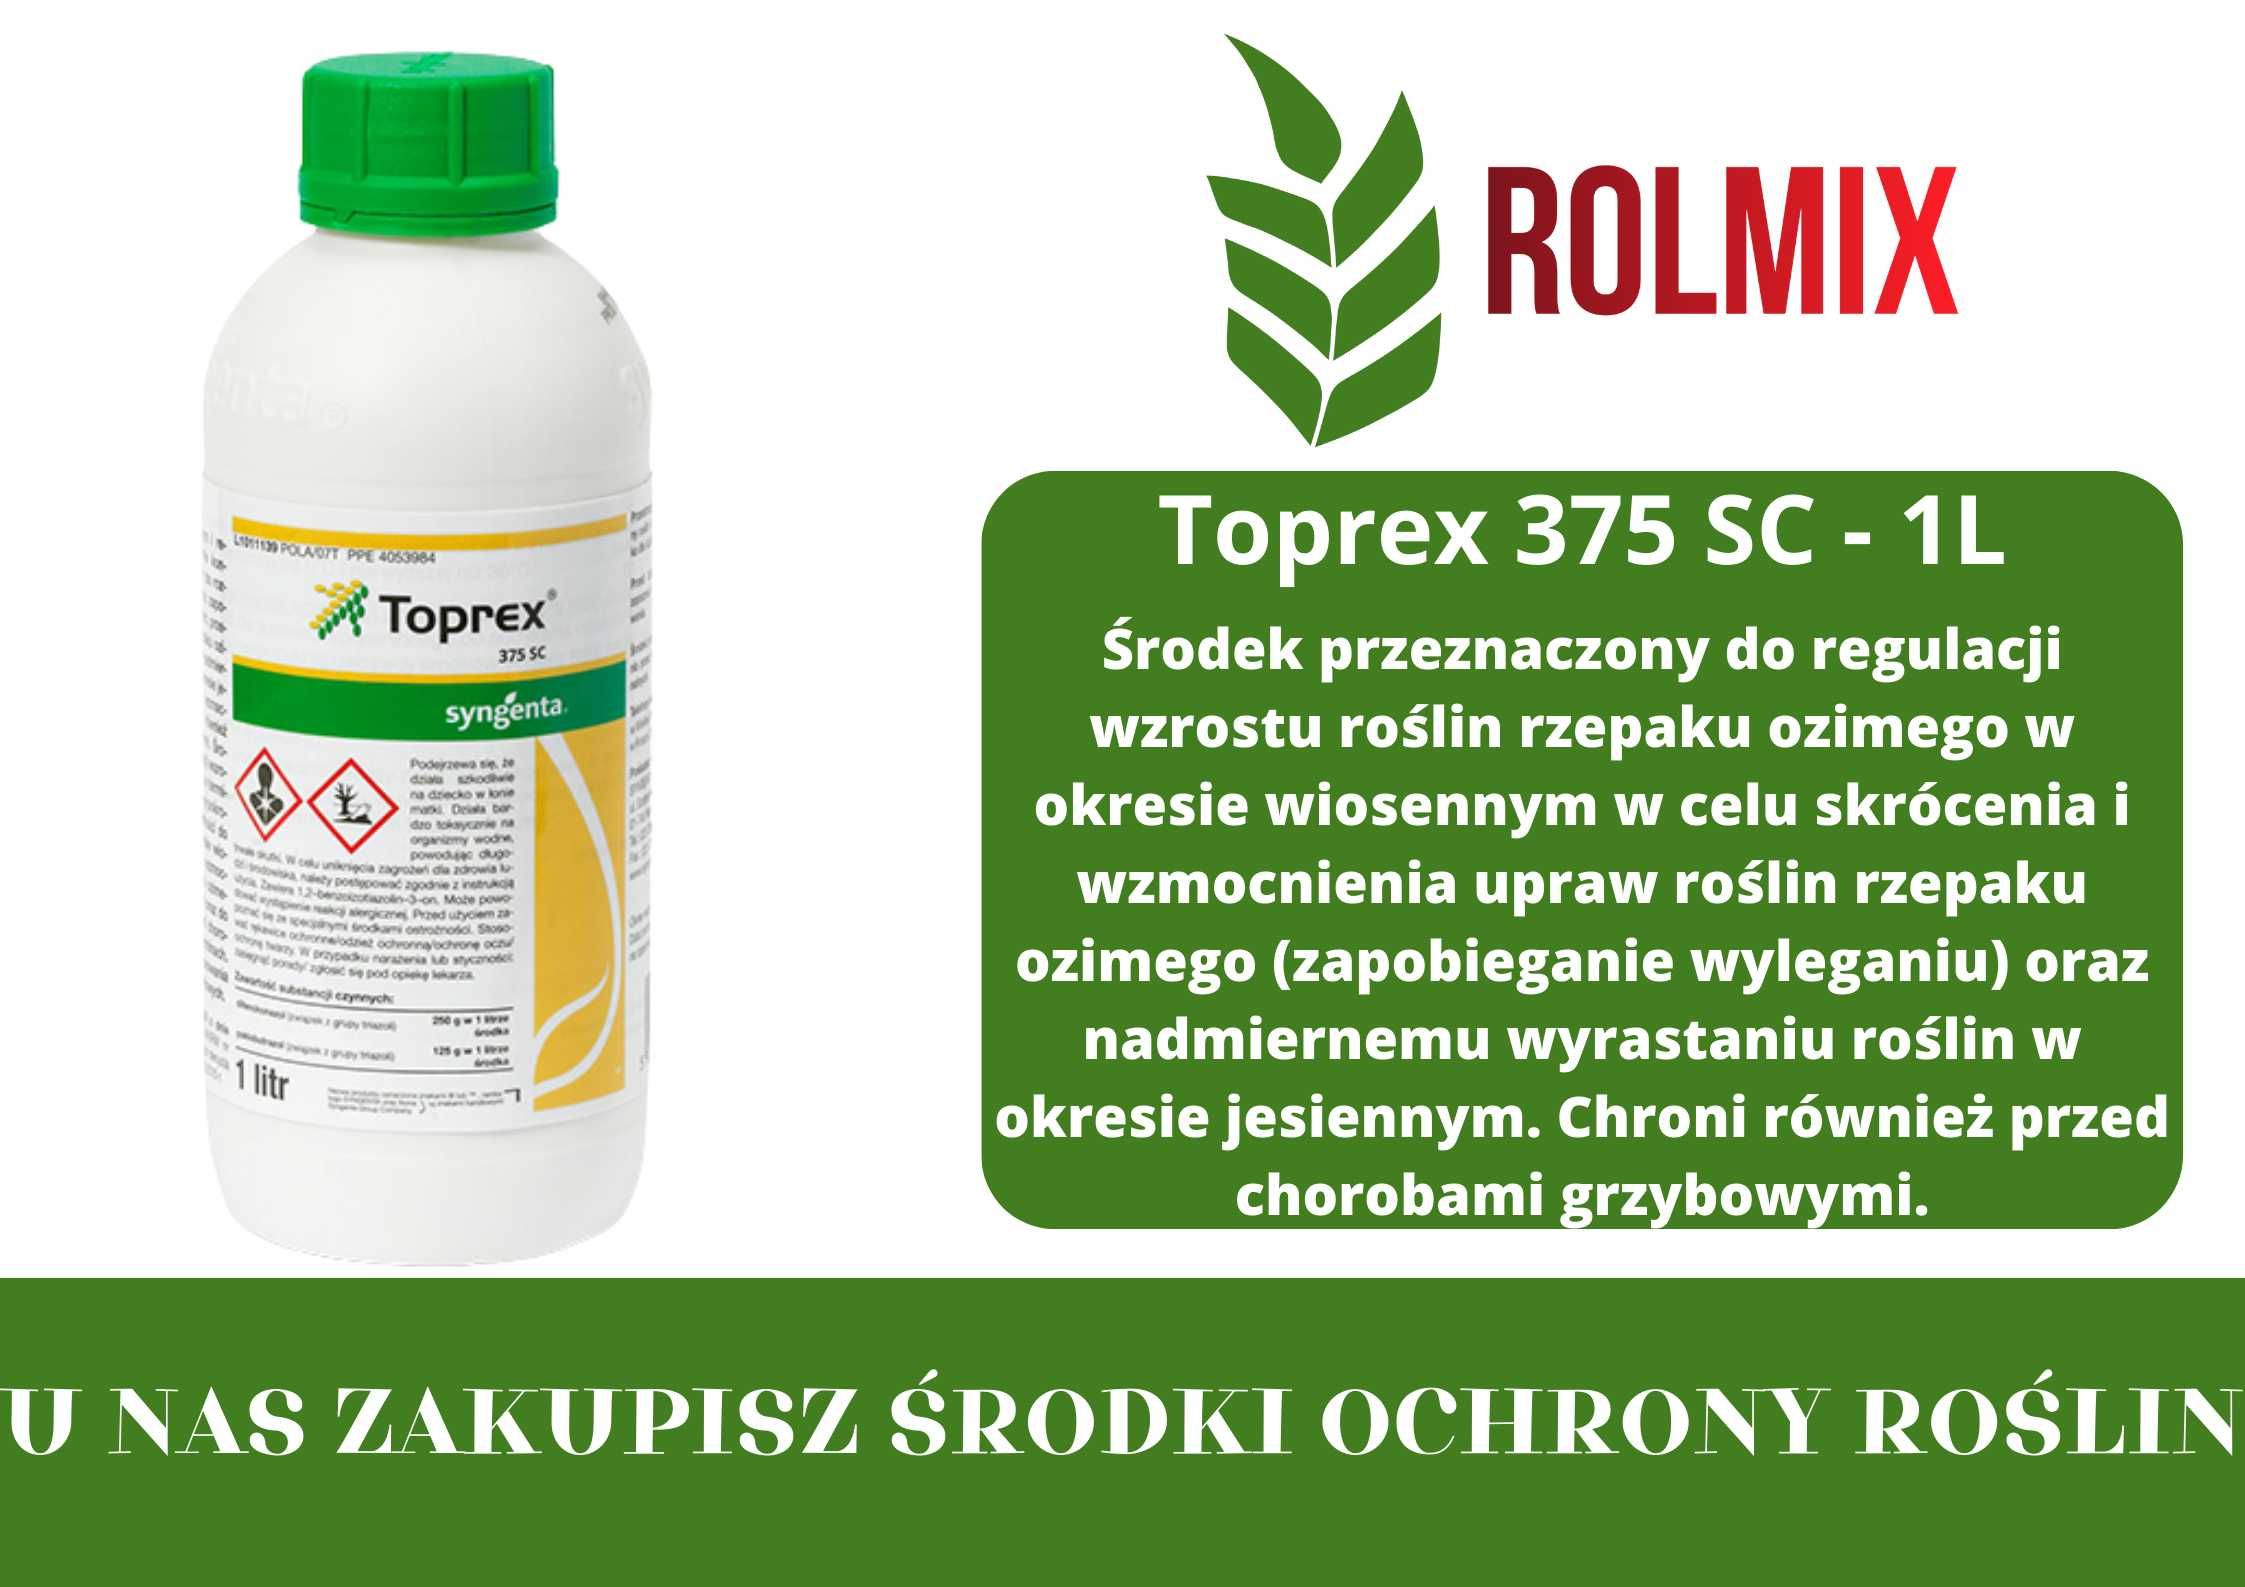 Toprex 375 SC - 1L